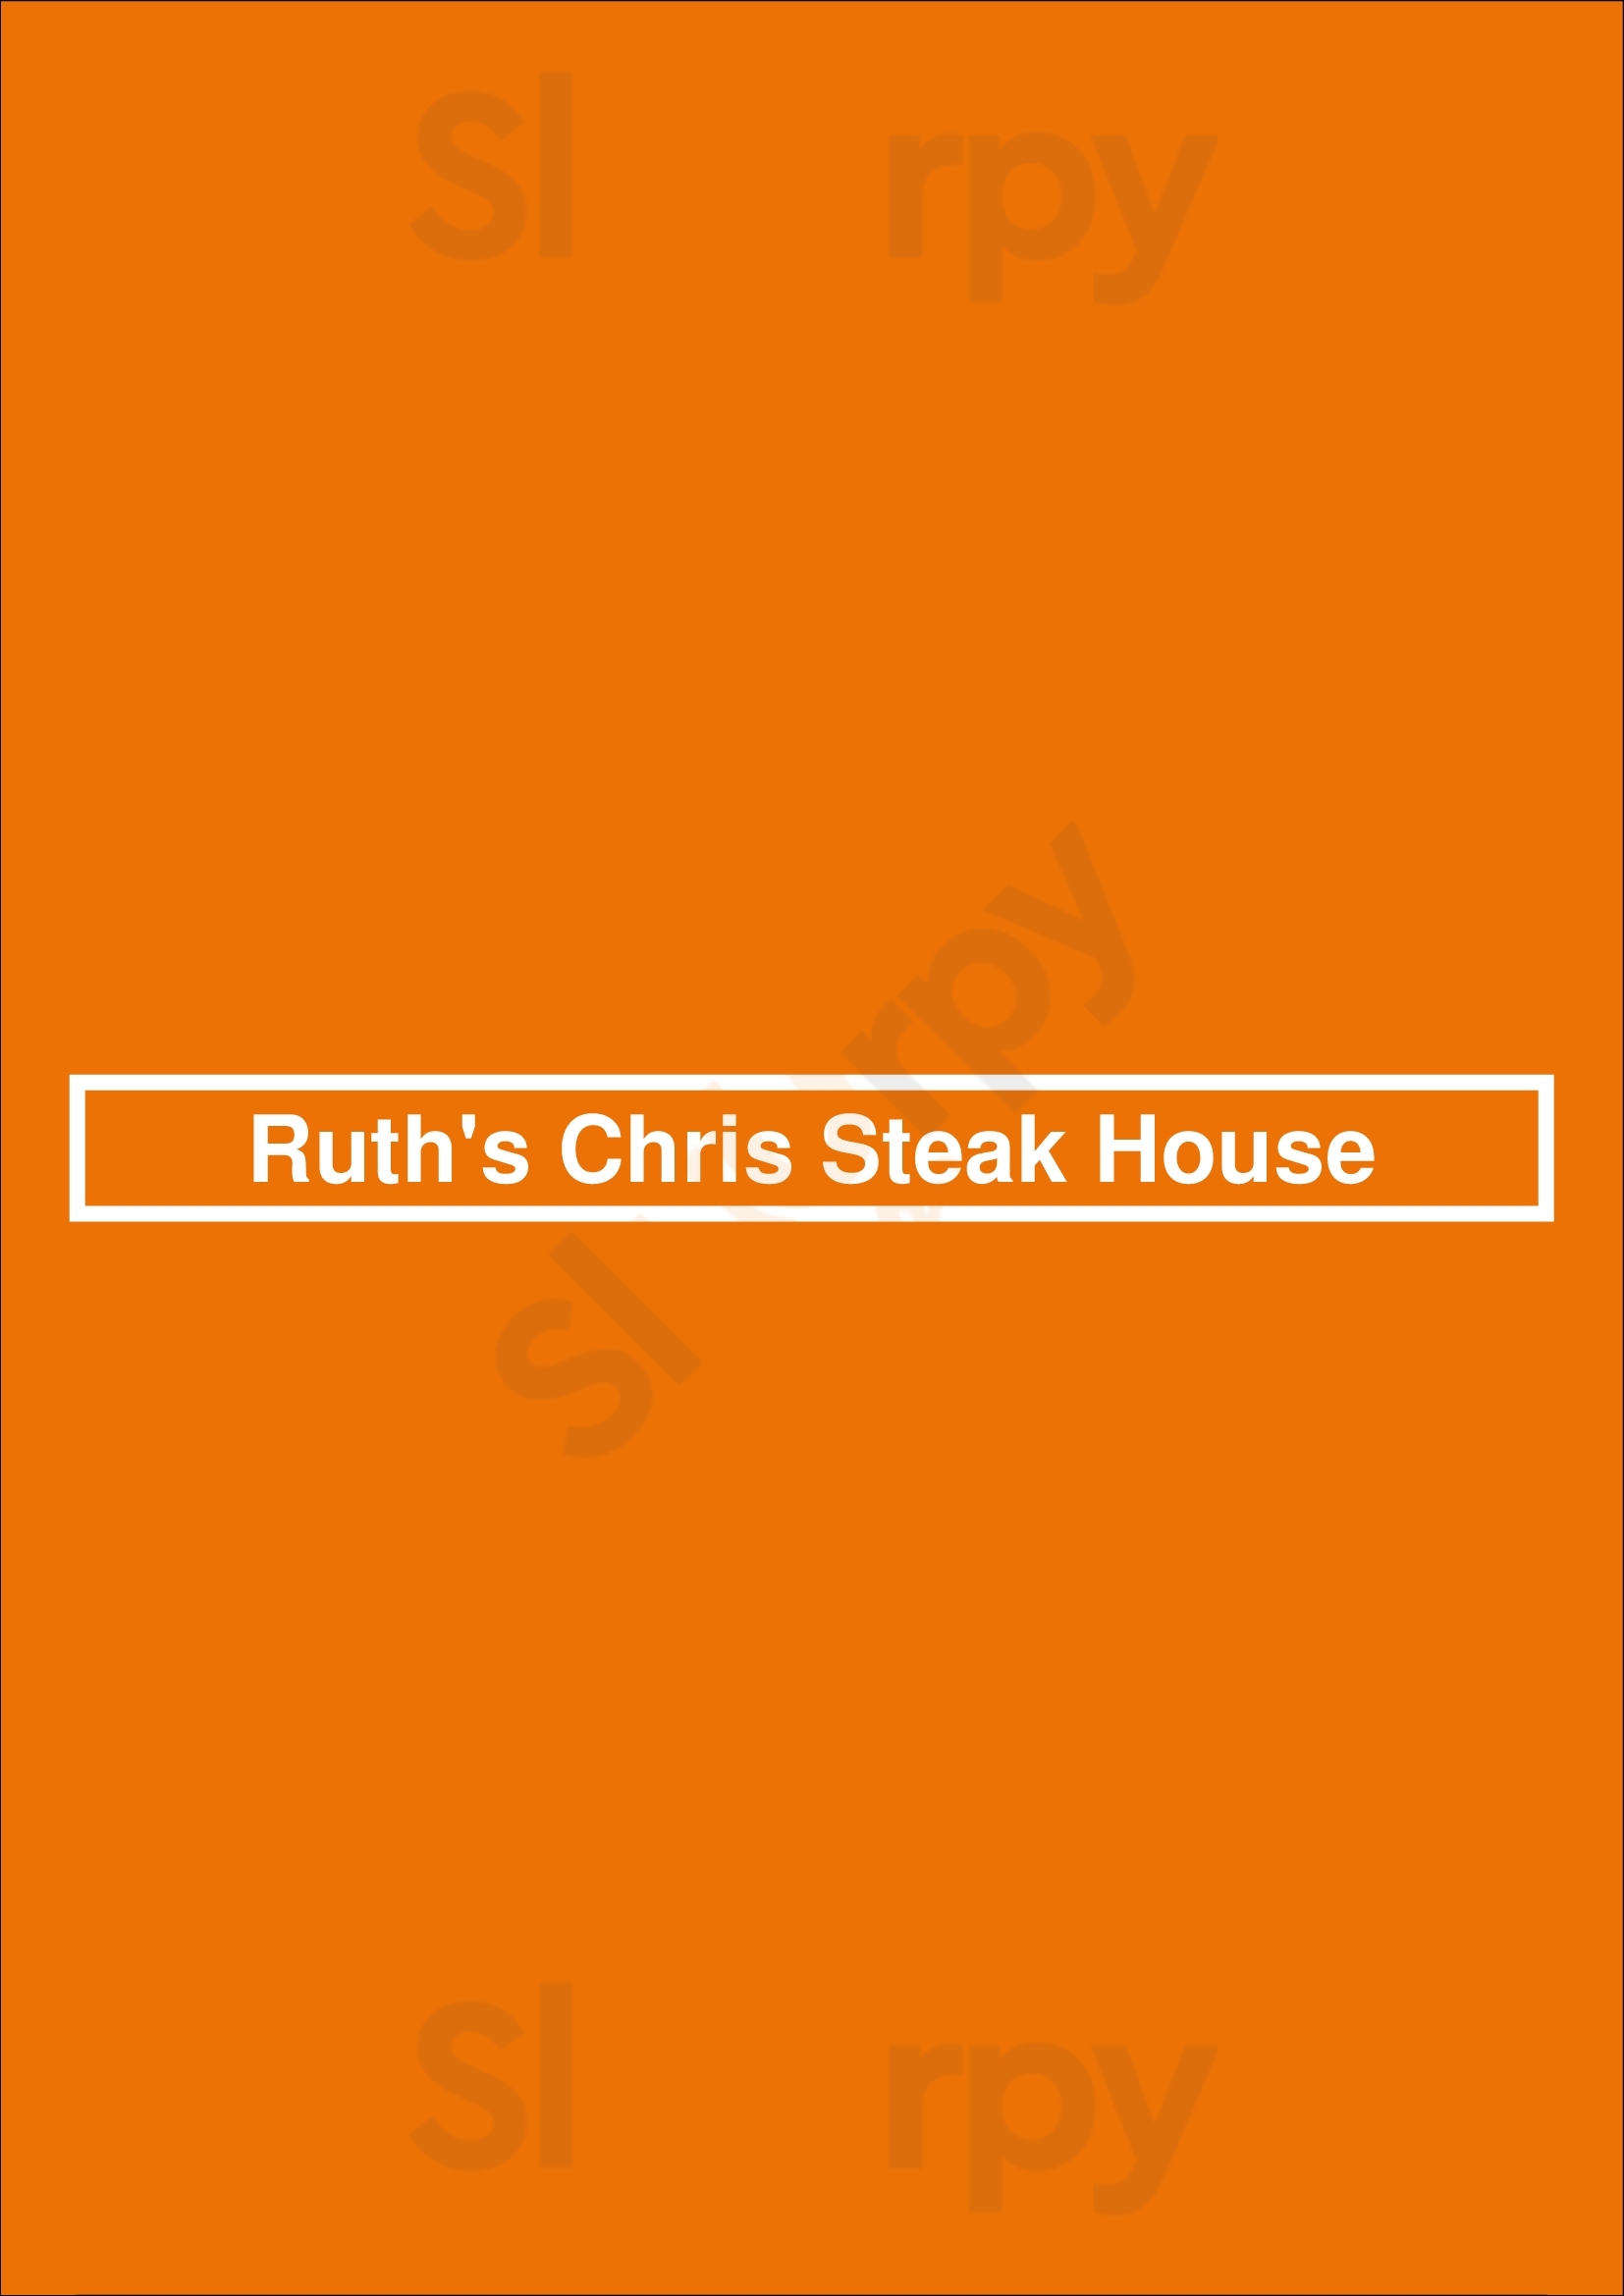 Ruth's Chris Steak House Markham Markham Menu - 1